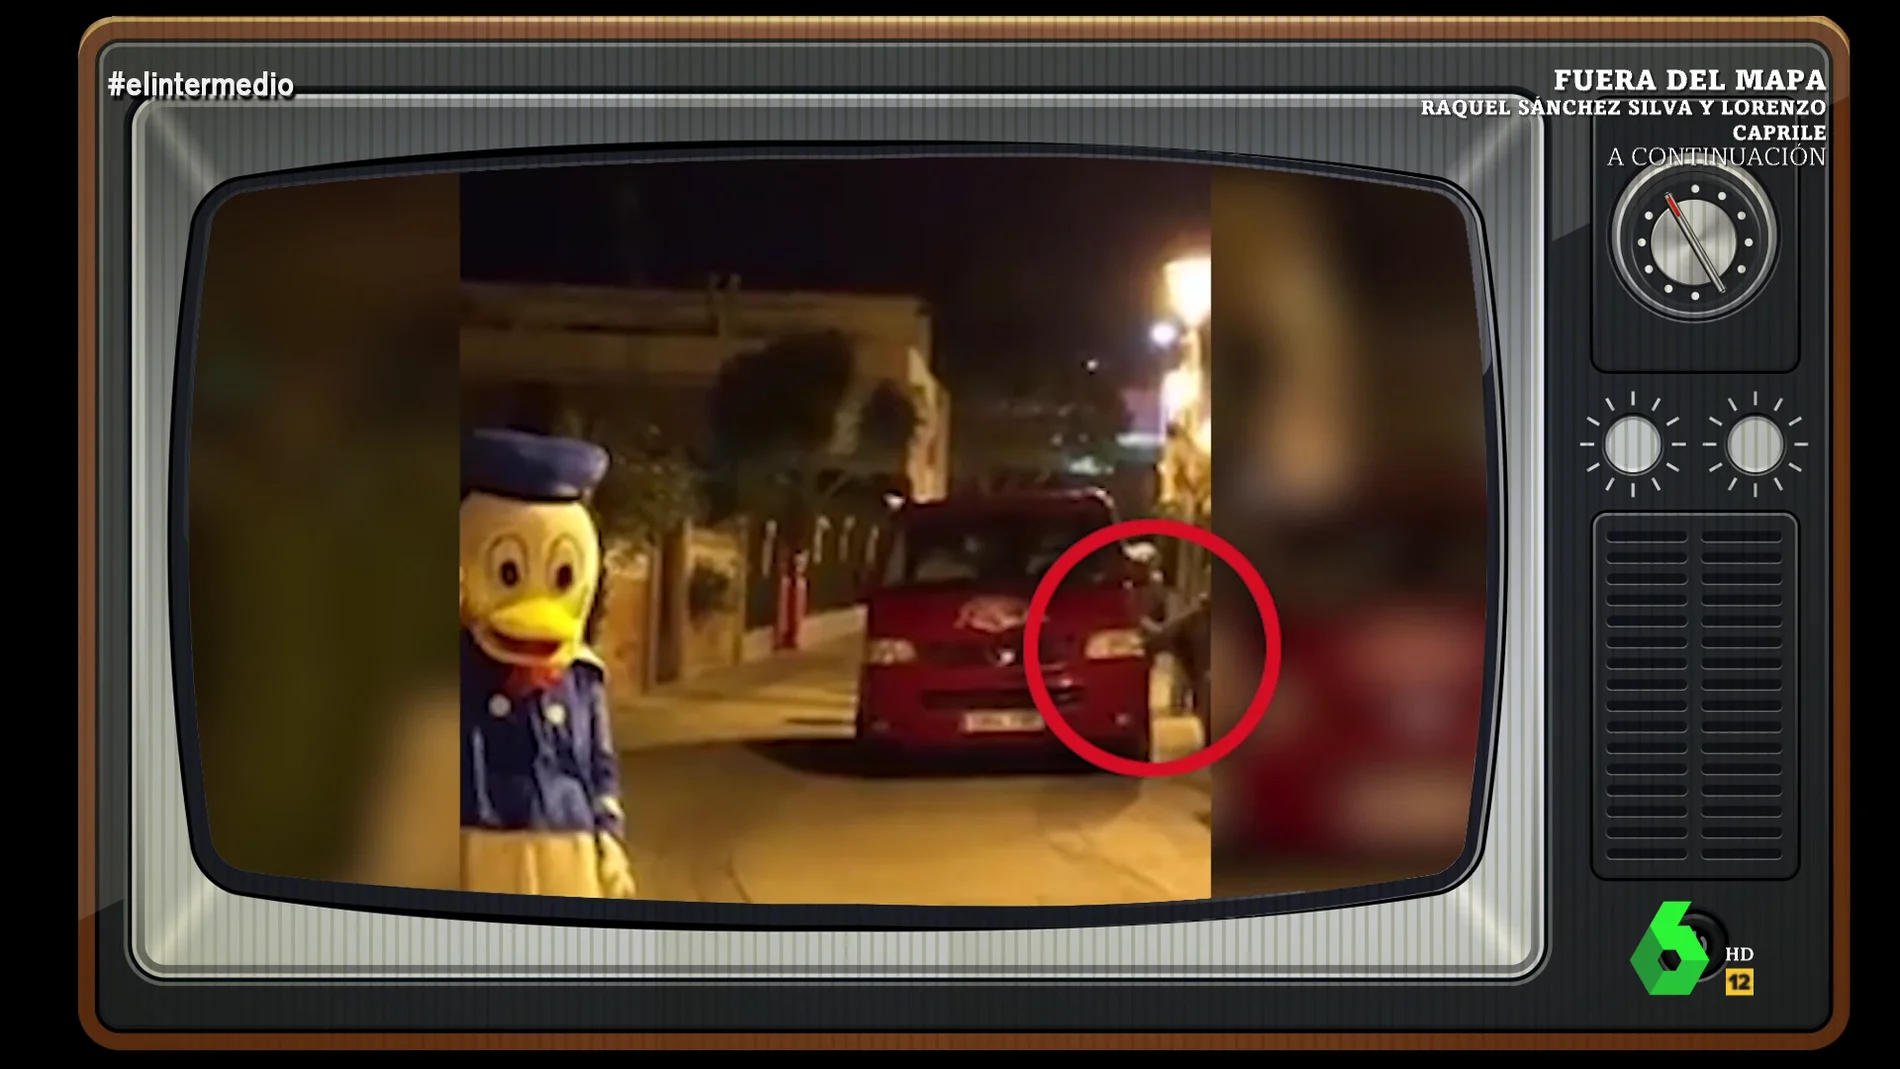 El perturbador detalle de un vídeo de una persona disfrazada del Pato Donald: "Detrás sale un hombre atado de pies y manos"